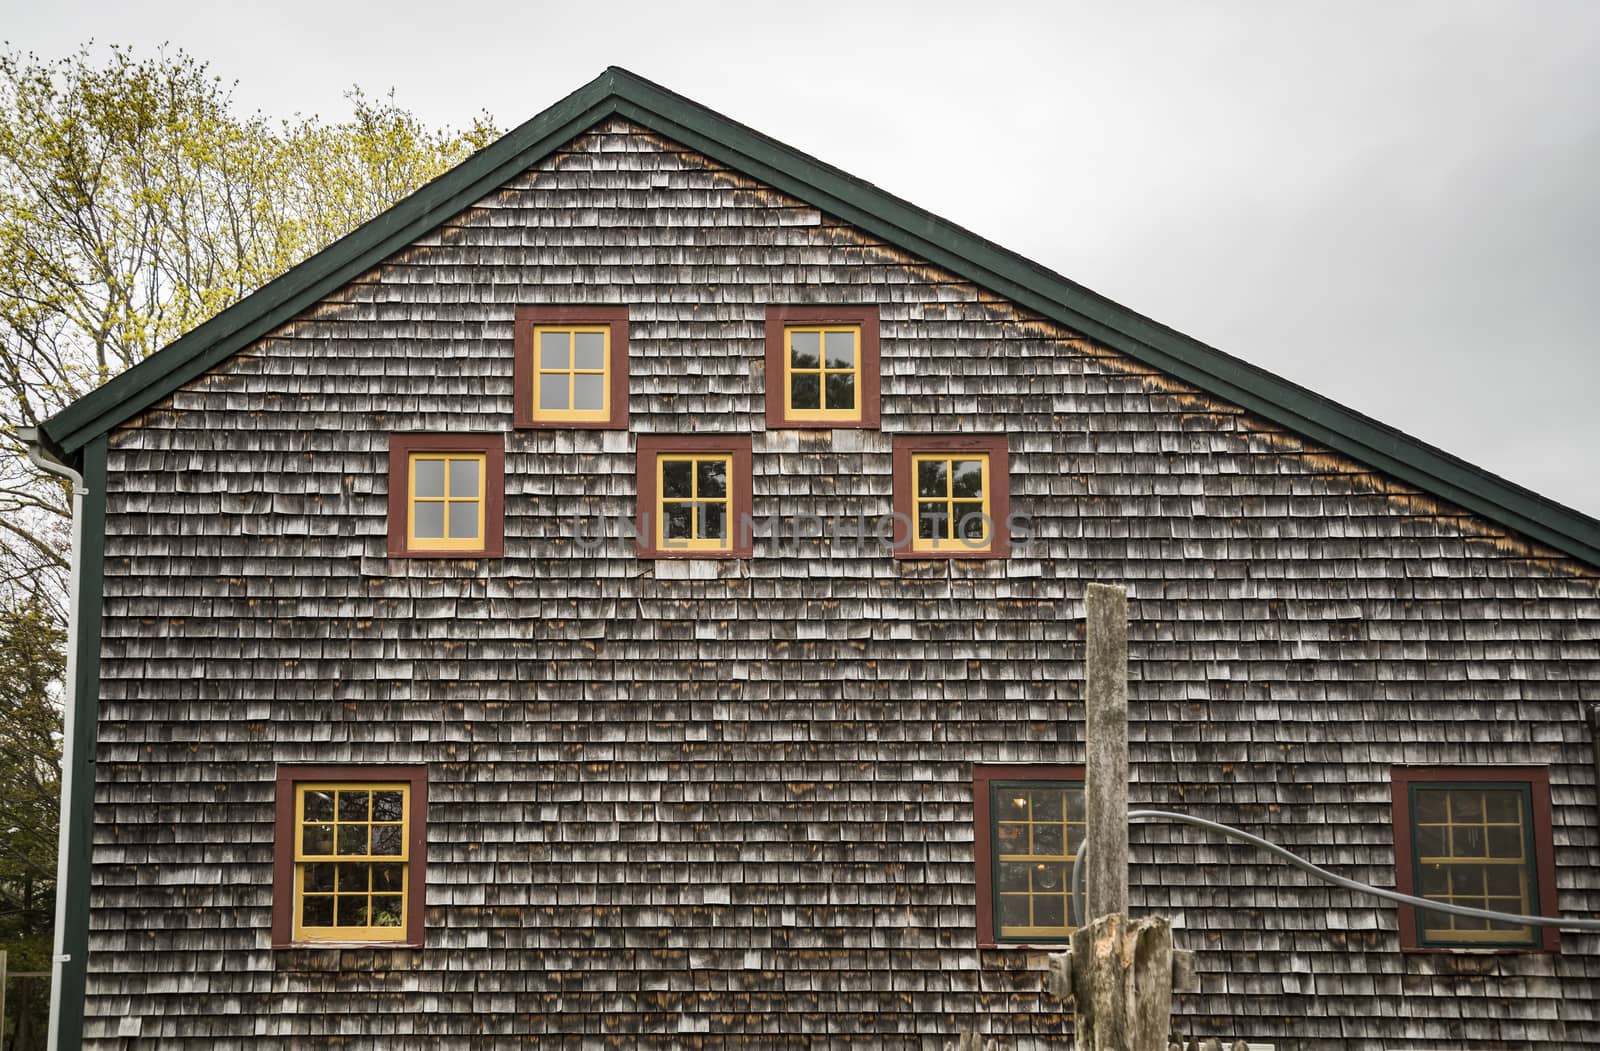 New England Farm House by edella